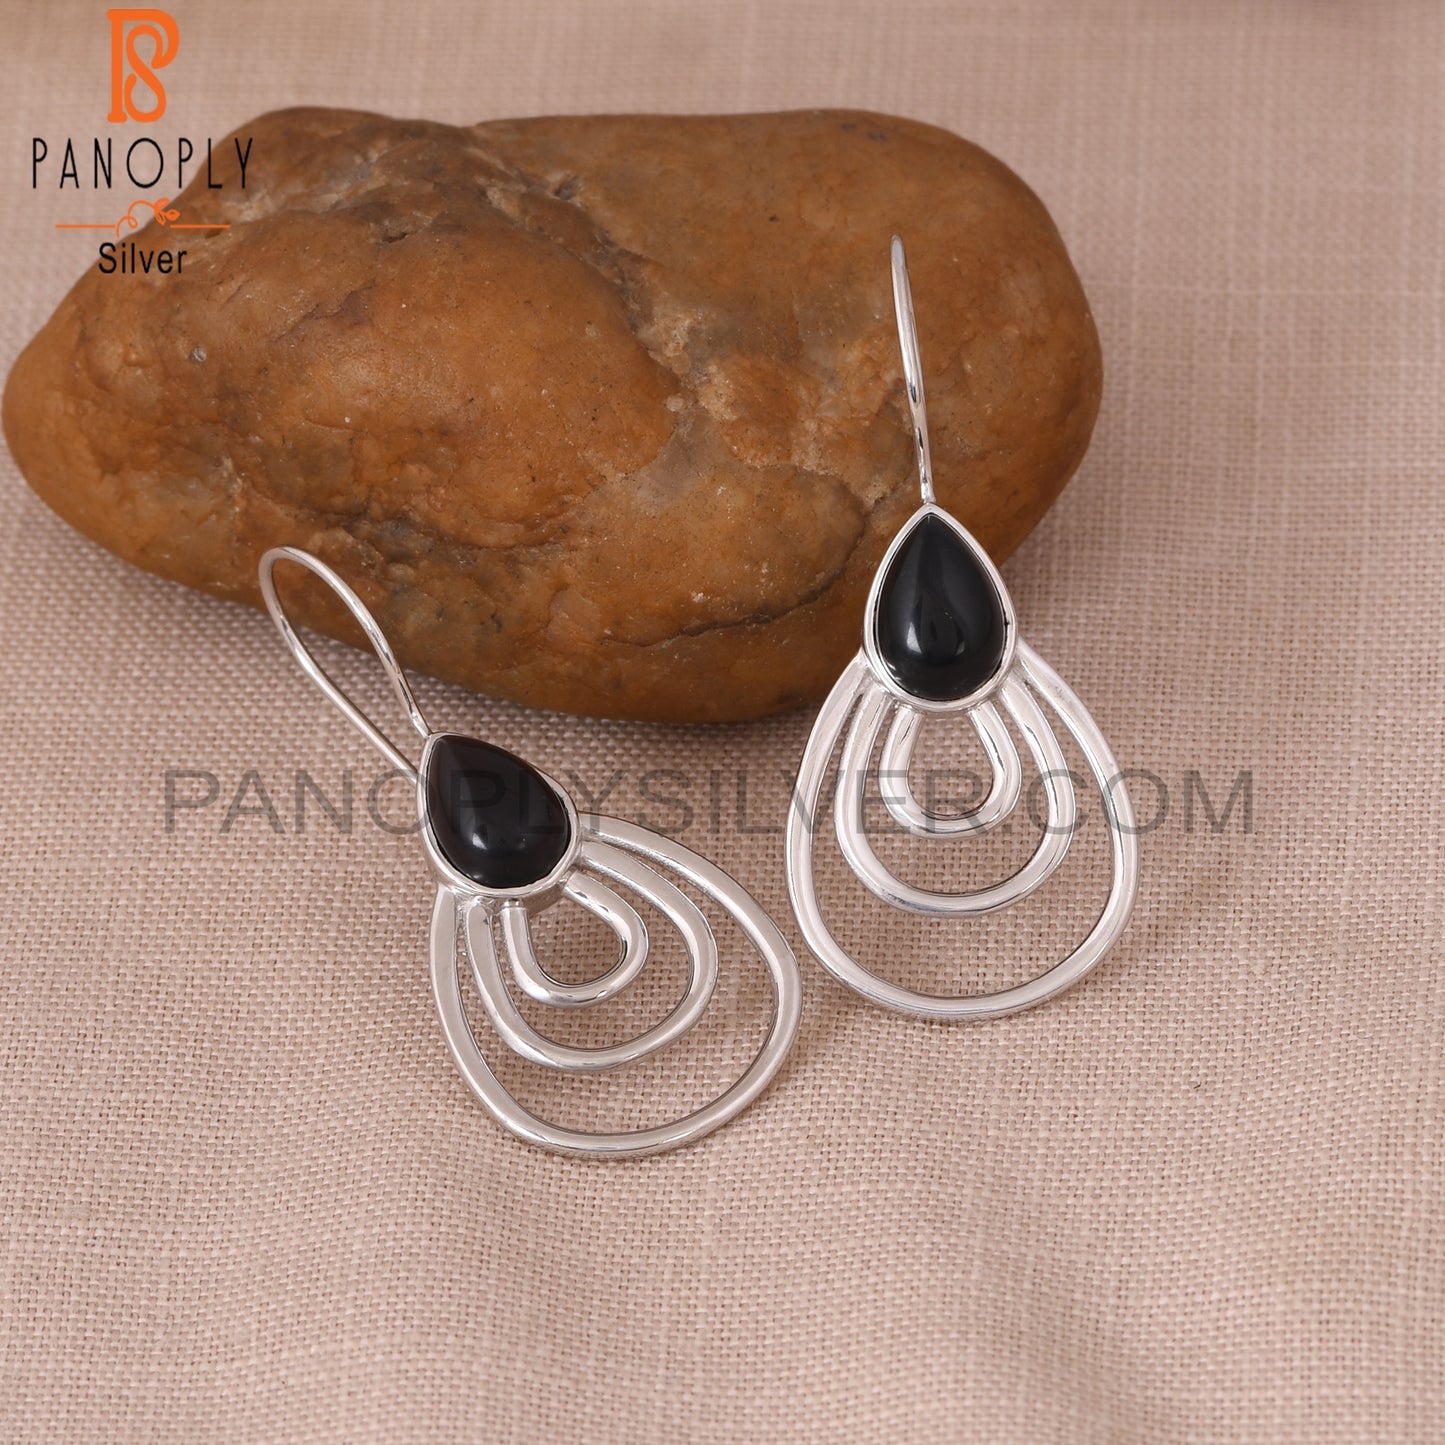 Genuine Black Onyx 925 Silver Concentric Hoop Earrings